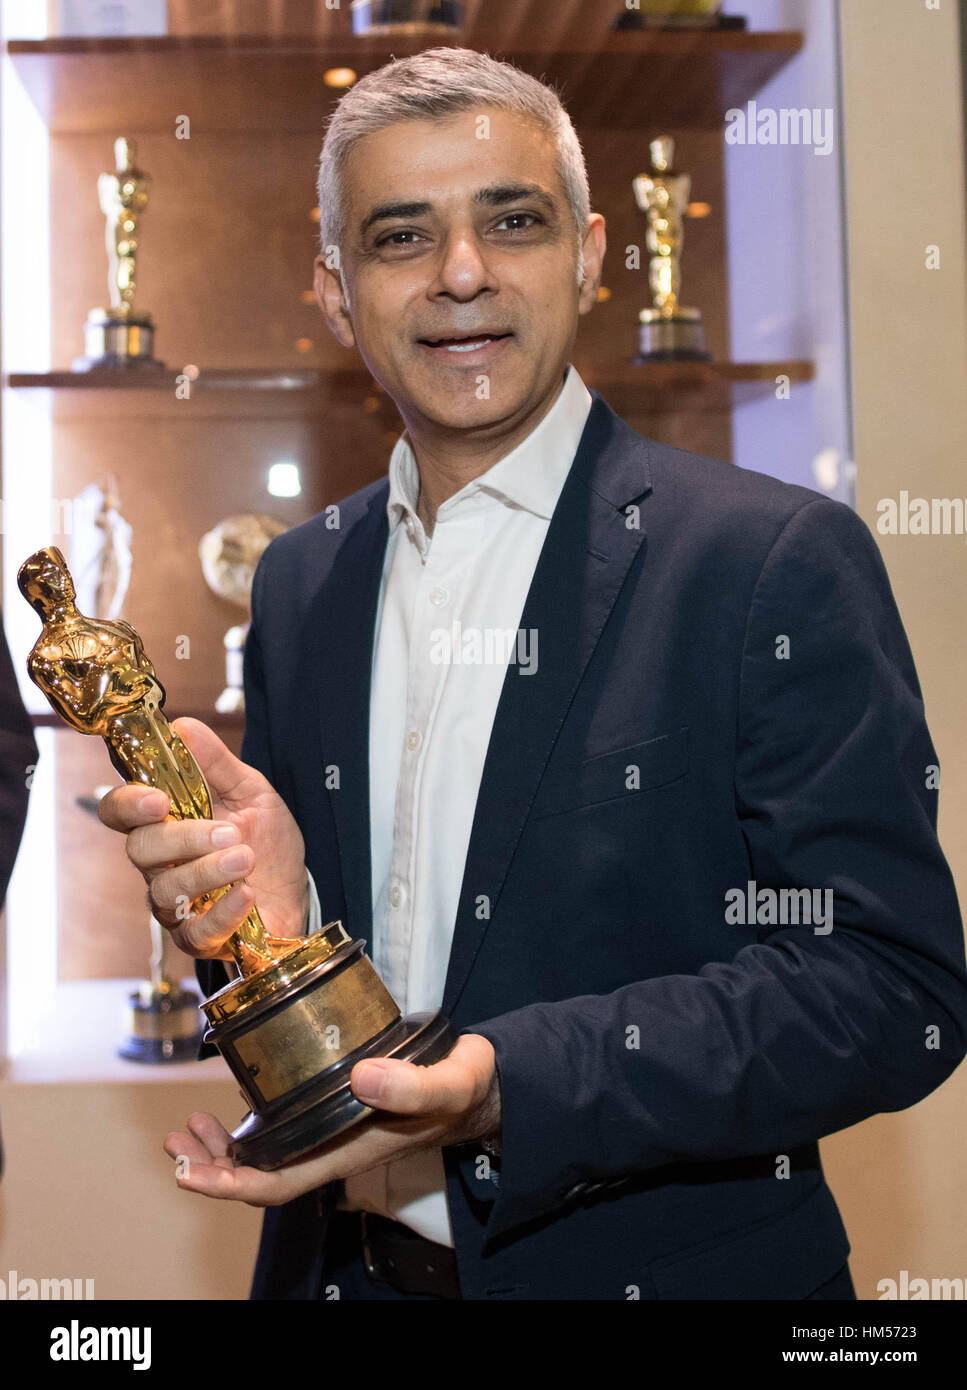 Bürgermeister von London Sadiq Khan hält ein "Oscar" ausgezeichnet an die Special-Effects-Firma Double Negative bei einem Besuch in der Kanzlei im Zentrum von London, der Hauptstadt der Filmindustrie zu diskutieren. Stockfoto